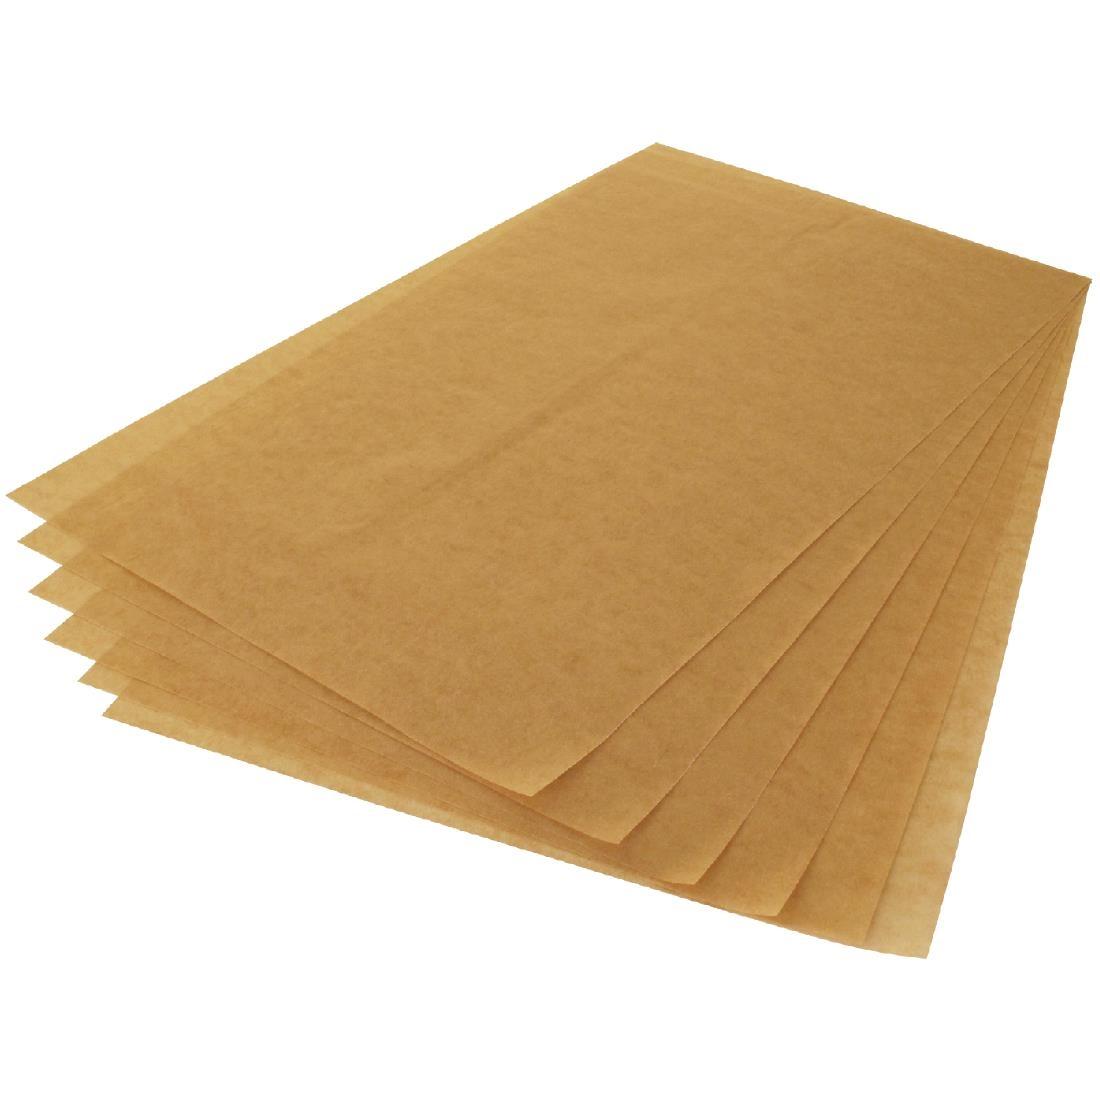 Matfer ECOPAP Baking Paper 600 x 400mm (Pack 500) - DN927  - 1